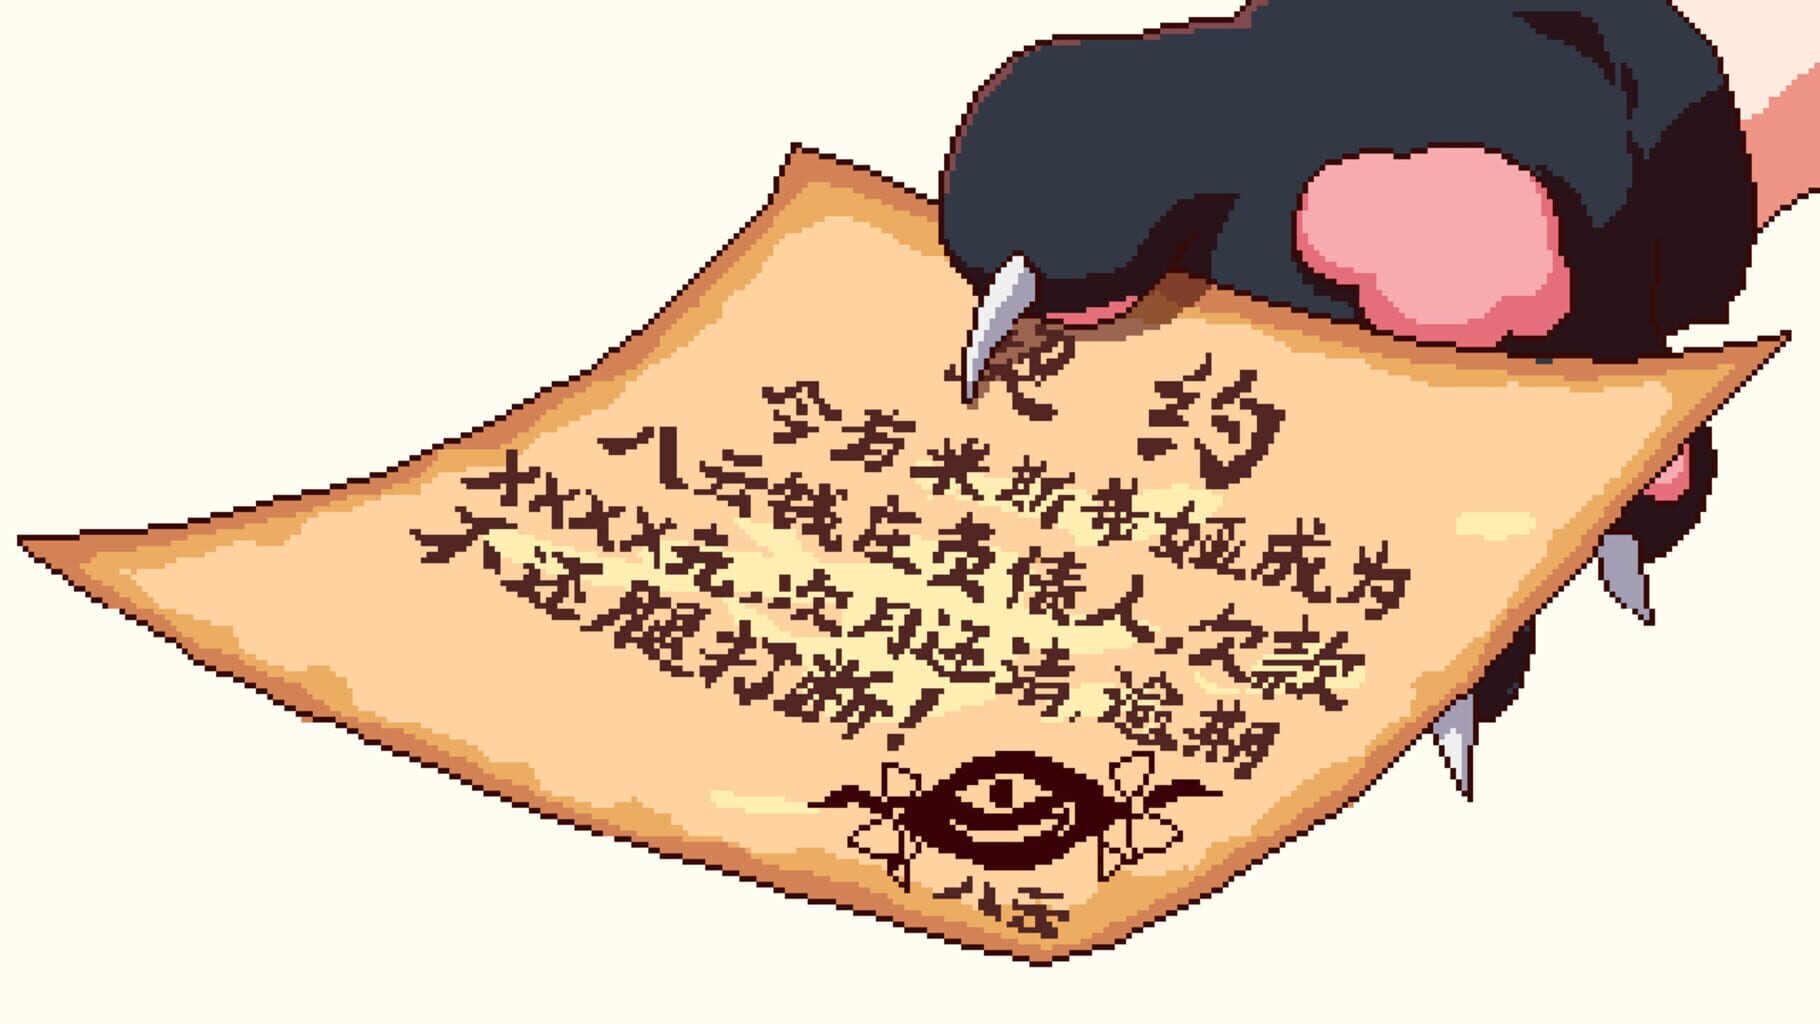 Touhou Mystia's Izakaya screenshot